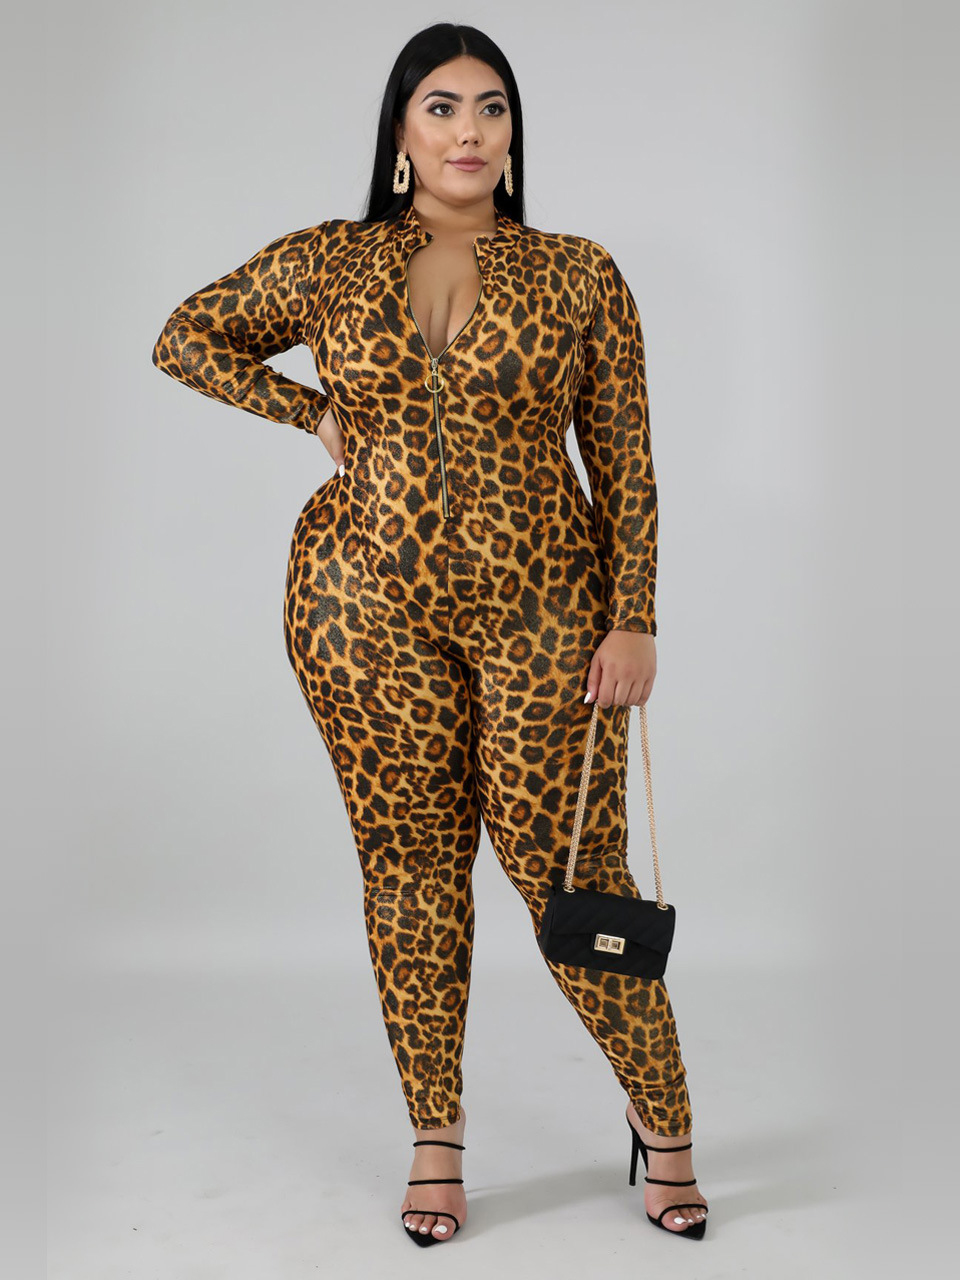 Wholesale Zipper Up Fitted Leopard Print Plus Size Jumpsuits ...